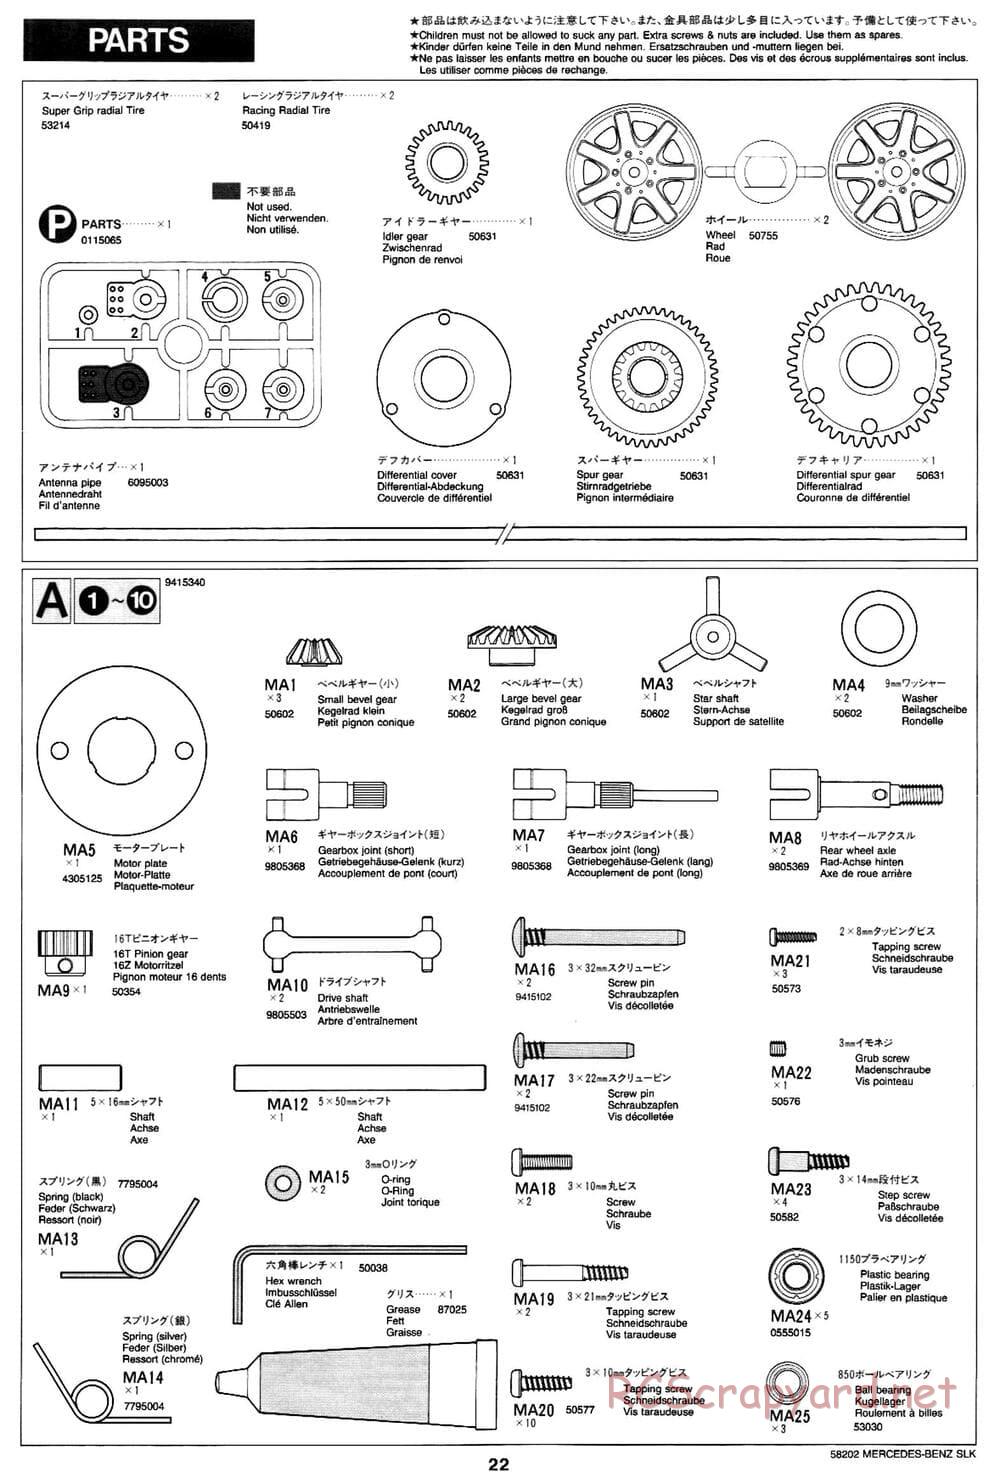 Tamiya - Mercedes-Benz SLK - M02L Chassis - Manual - Page 22